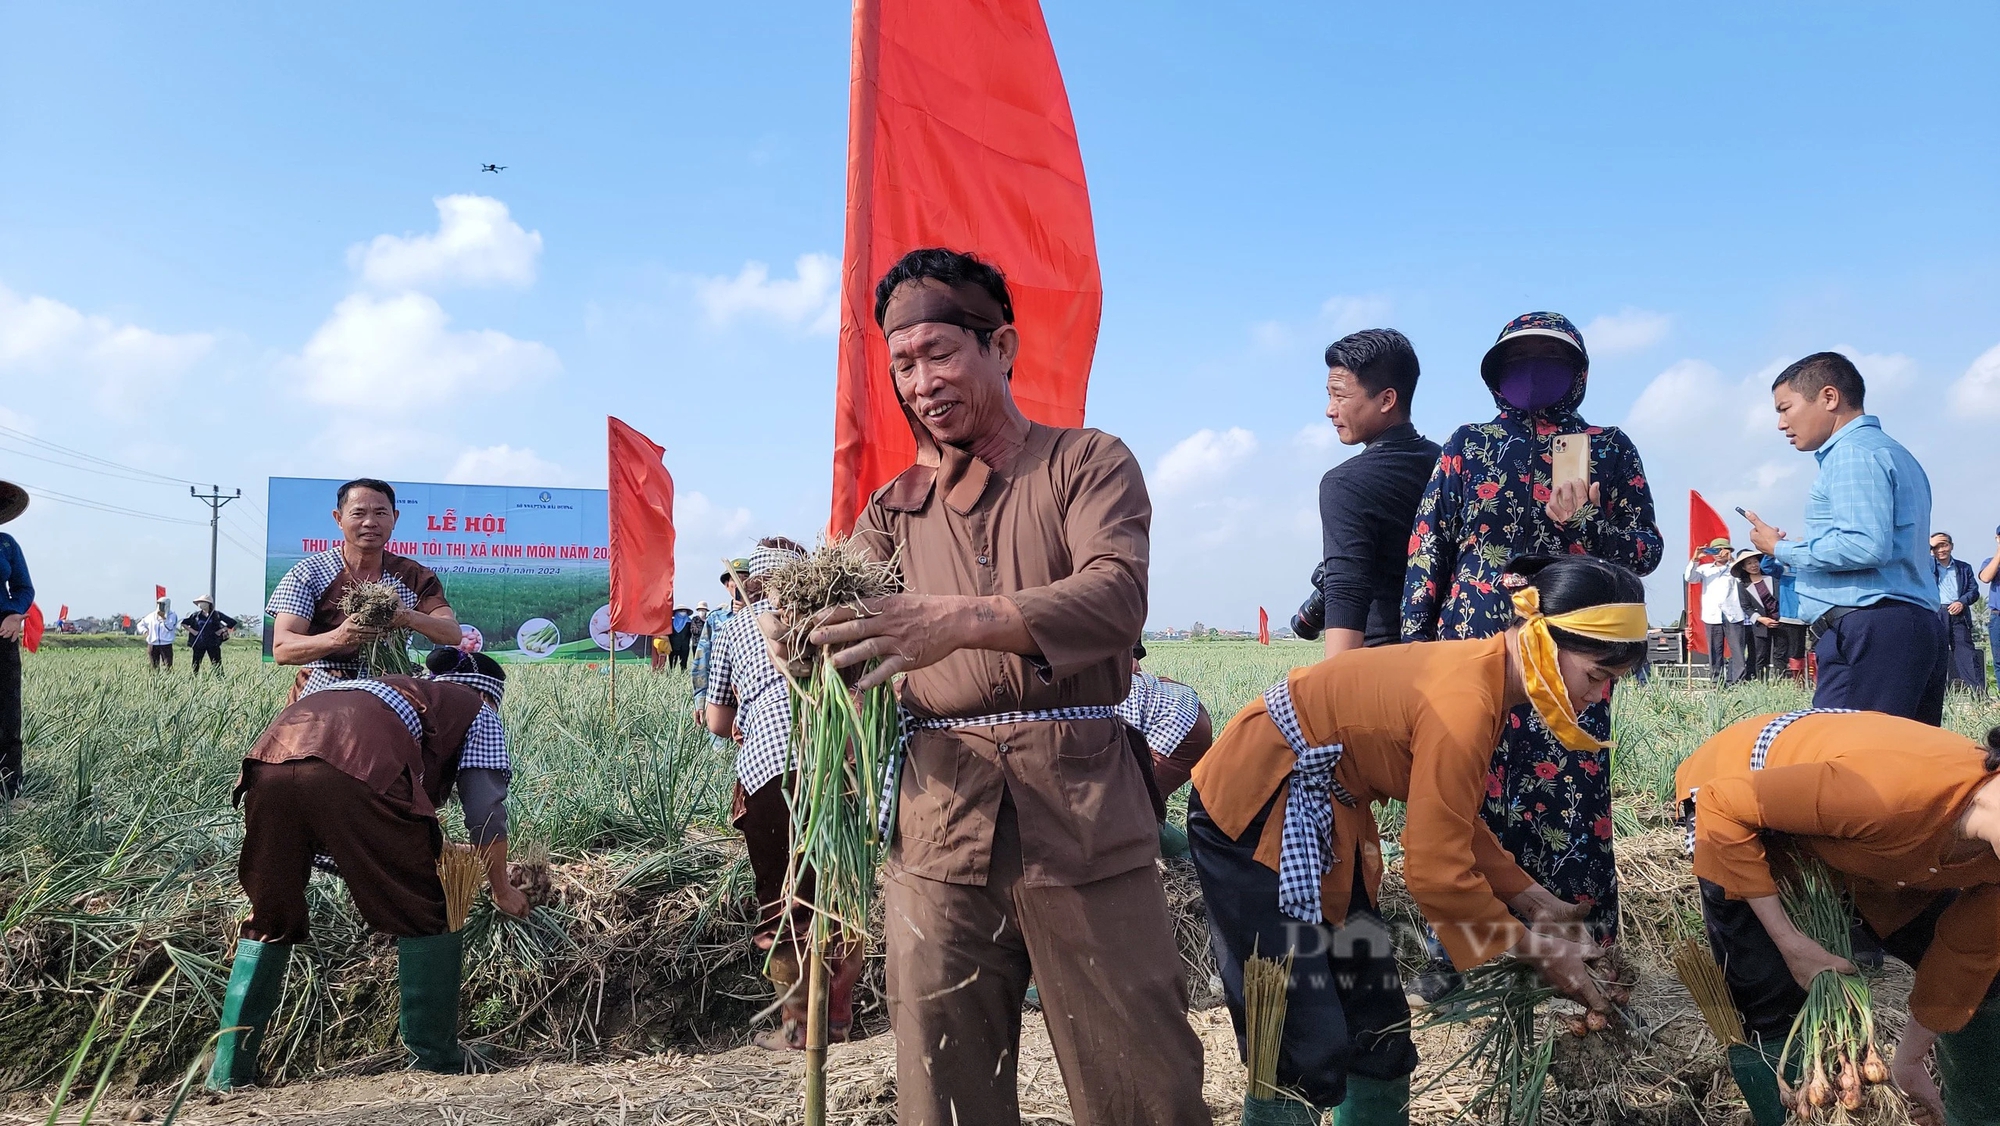 Bộ trưởng Lê Minh Hoan, Bí thư Tỉnh ủy Hải Dương Trần Đức Thắng xuống đồng cổ vũ nông dân thi nhổ hành, tỏi- Ảnh 11.